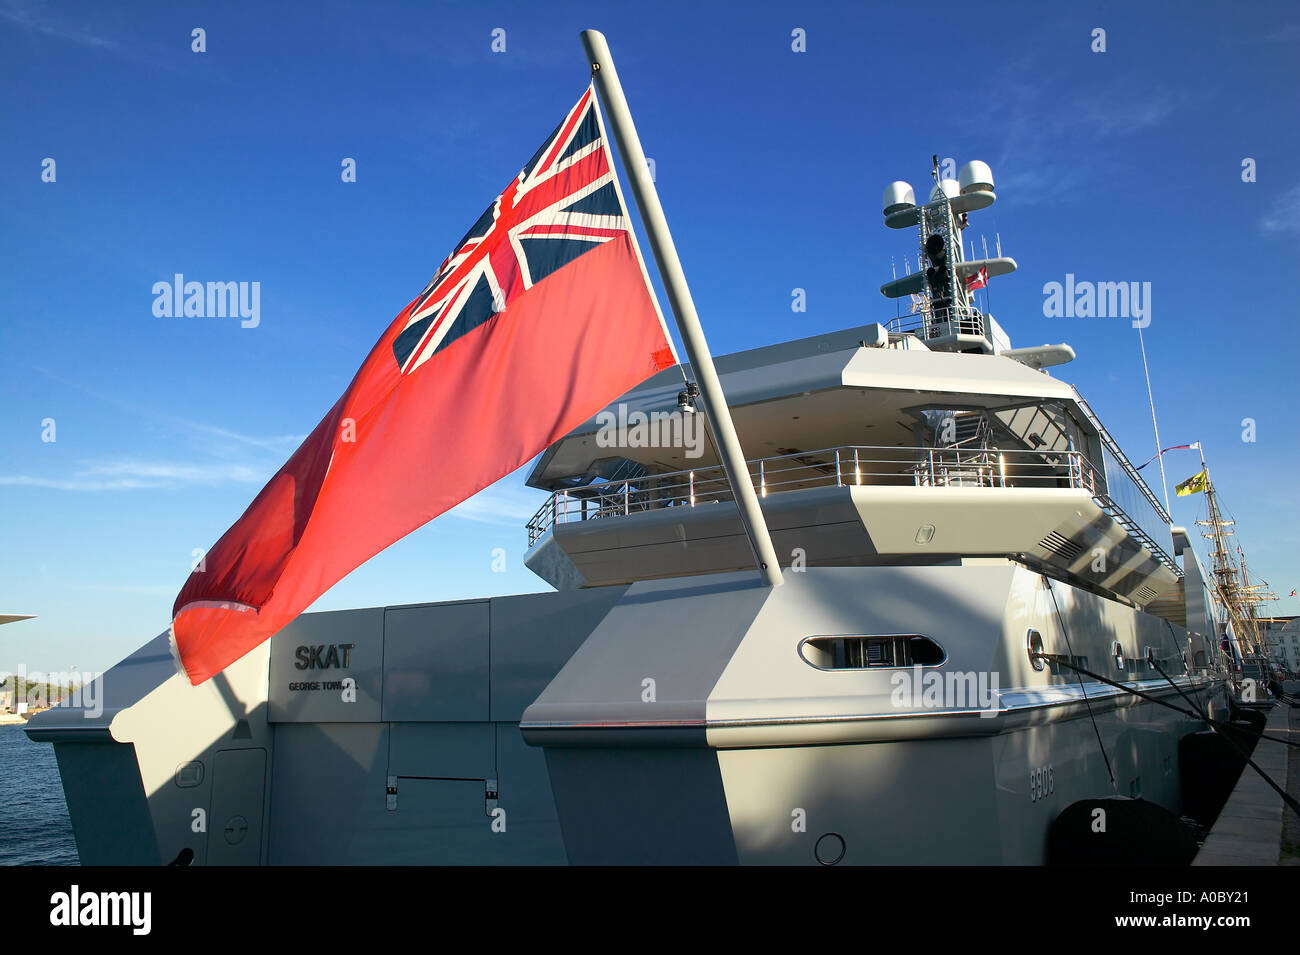 British red Ensign flag on 'Skat' luxury yacht moored in Copenhagen harbour, Denmark Europe Stock Photo